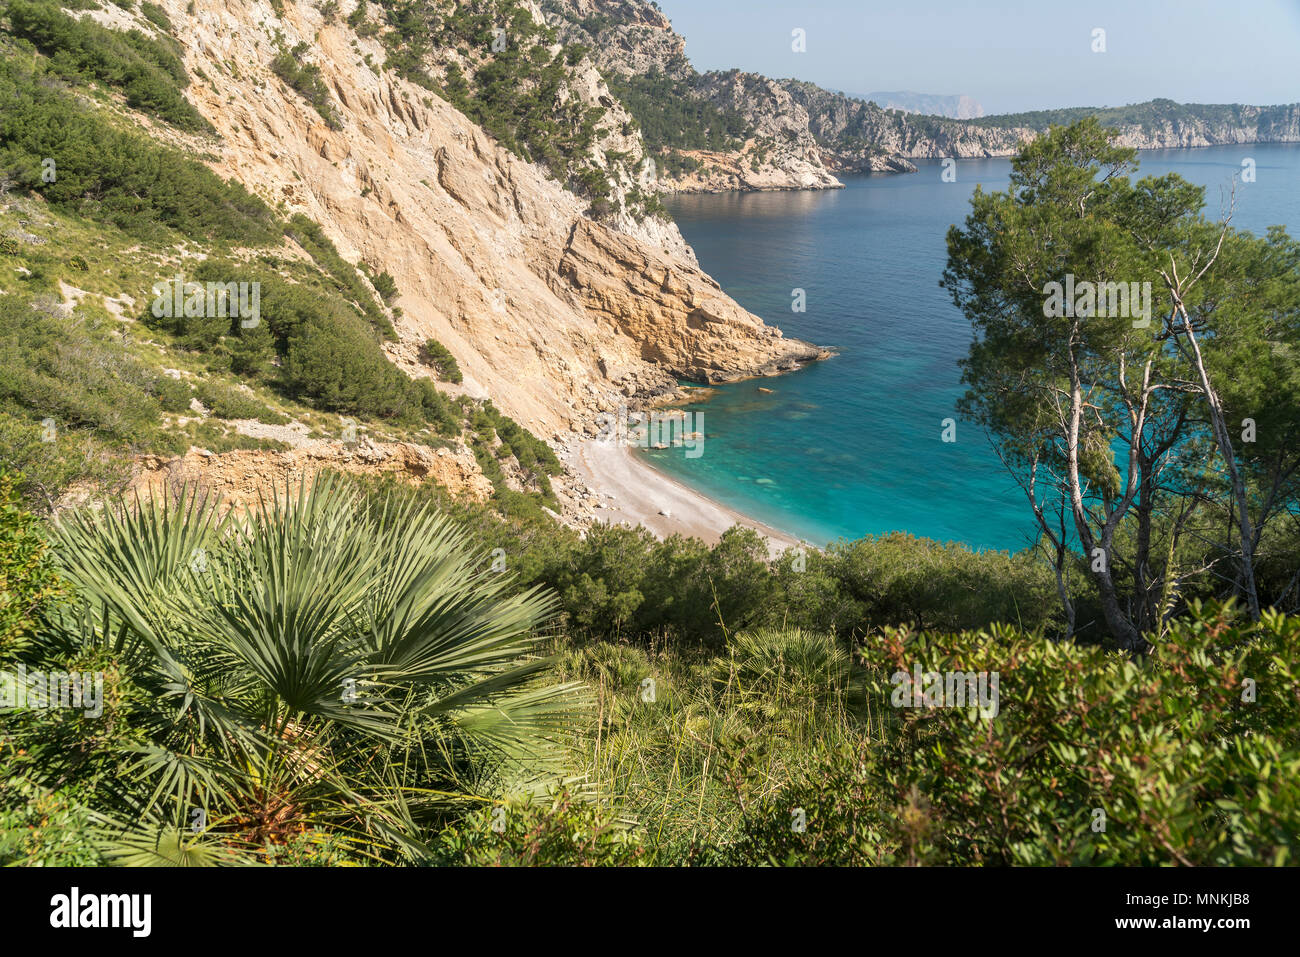 Halbinsel Victoria, Mallorca, Balearen, Spanien  |  Victoria peninsula,  Majorca, Balearic Islands, Spain, Stock Photo